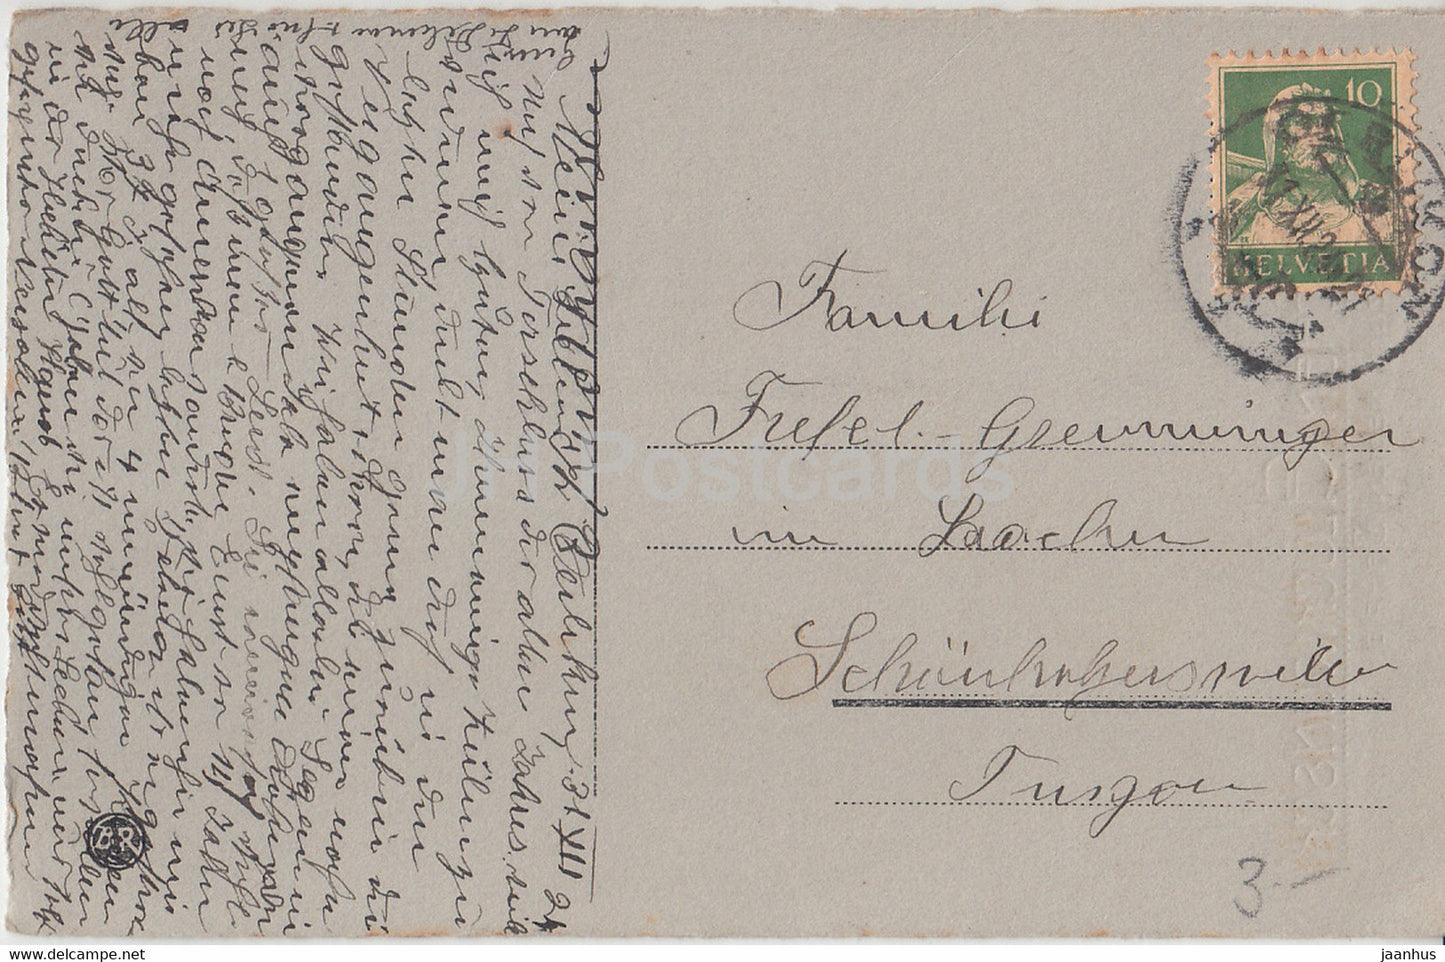 New Year Greeting Card - Herzlichen Gluckwunsch zum Neuen Jahre - house - BR - old postcard - 1924 - Germany - used